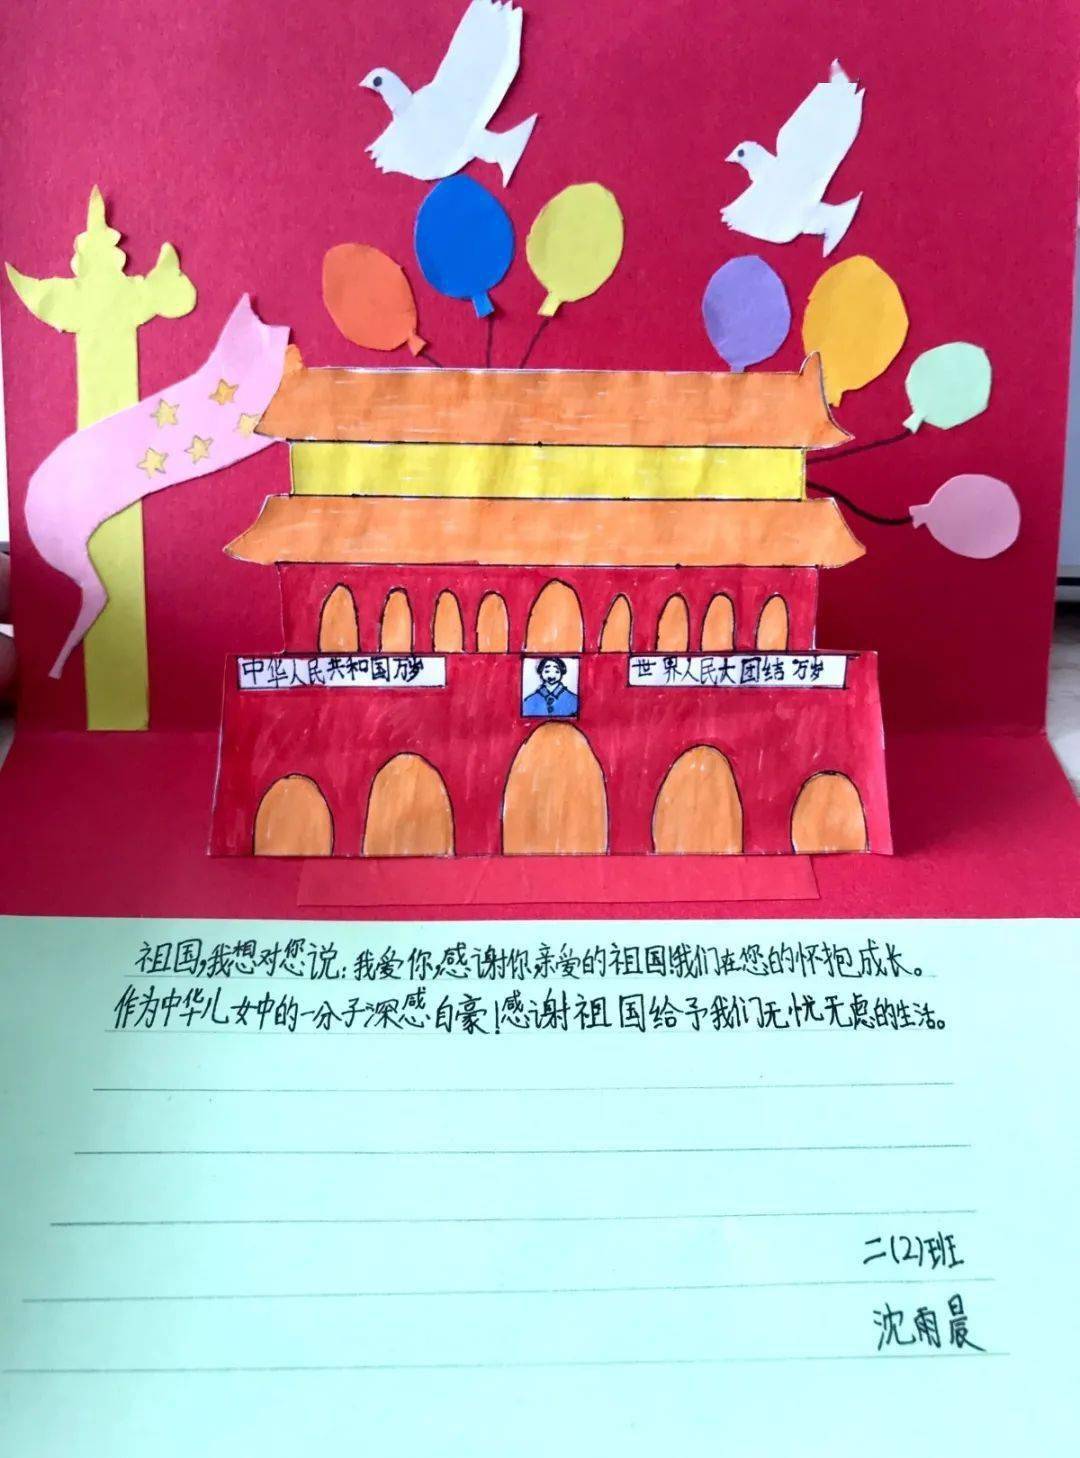 我与祖国共成长 ——龙江实验学校爱国主义教育系列活动报道